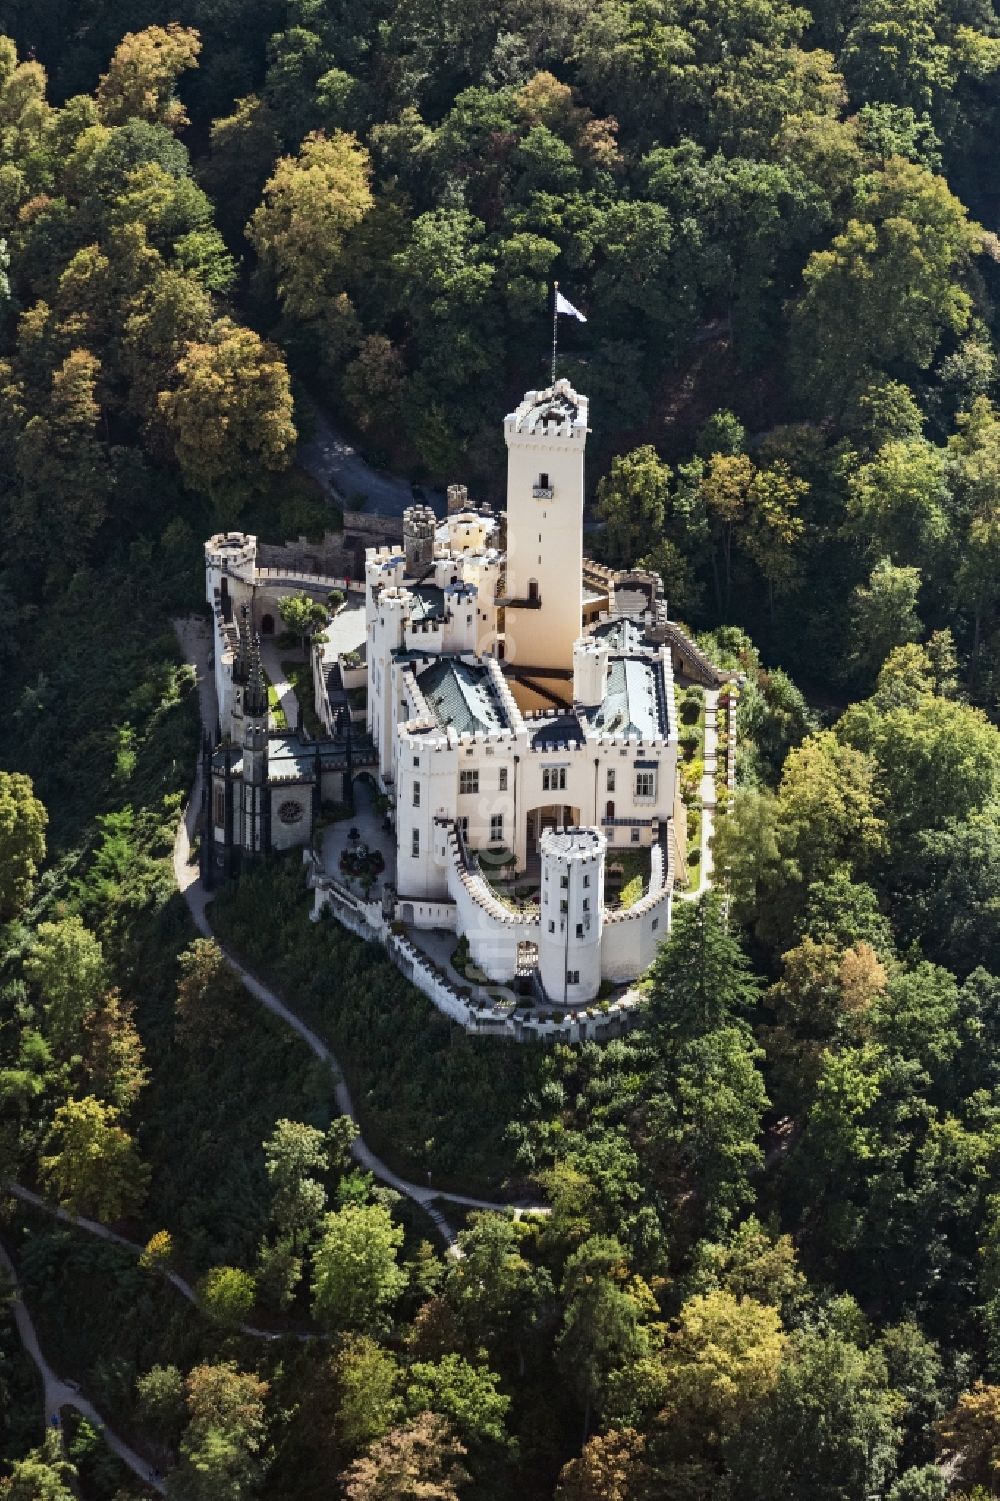 Luftbild Koblenz - Burganlage der Veste Stolzenfels am Schlossweg in Koblenz im Bundesland Rheinland-Pfalz, Deutschland